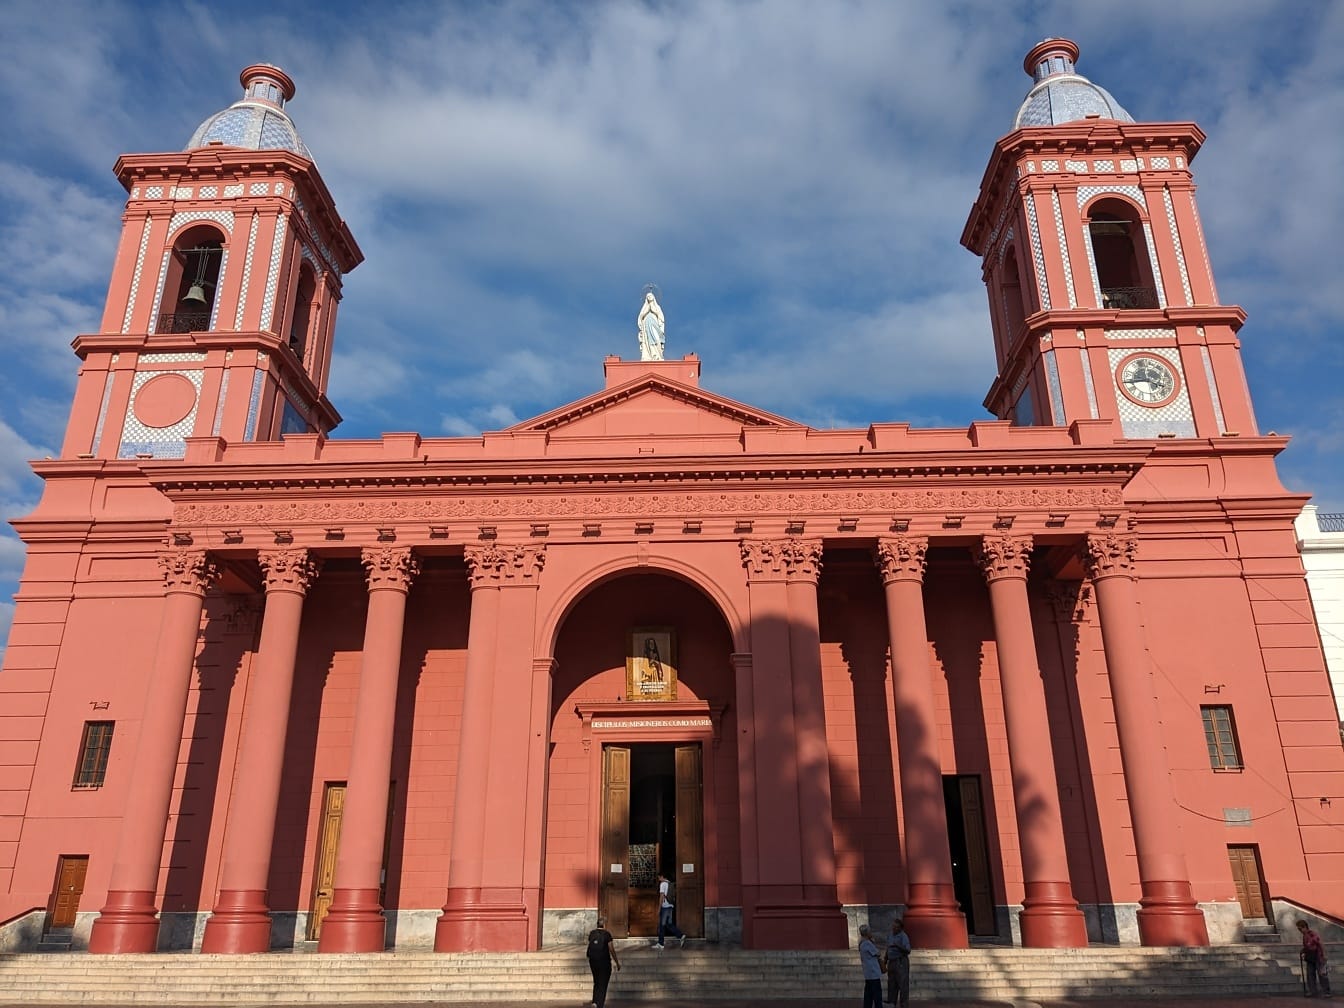 Katedrálna bazilika Panny Márie z údolia v Catamarca v Argentíne s dvoma vežami v koloniálnom architektonickom štýle